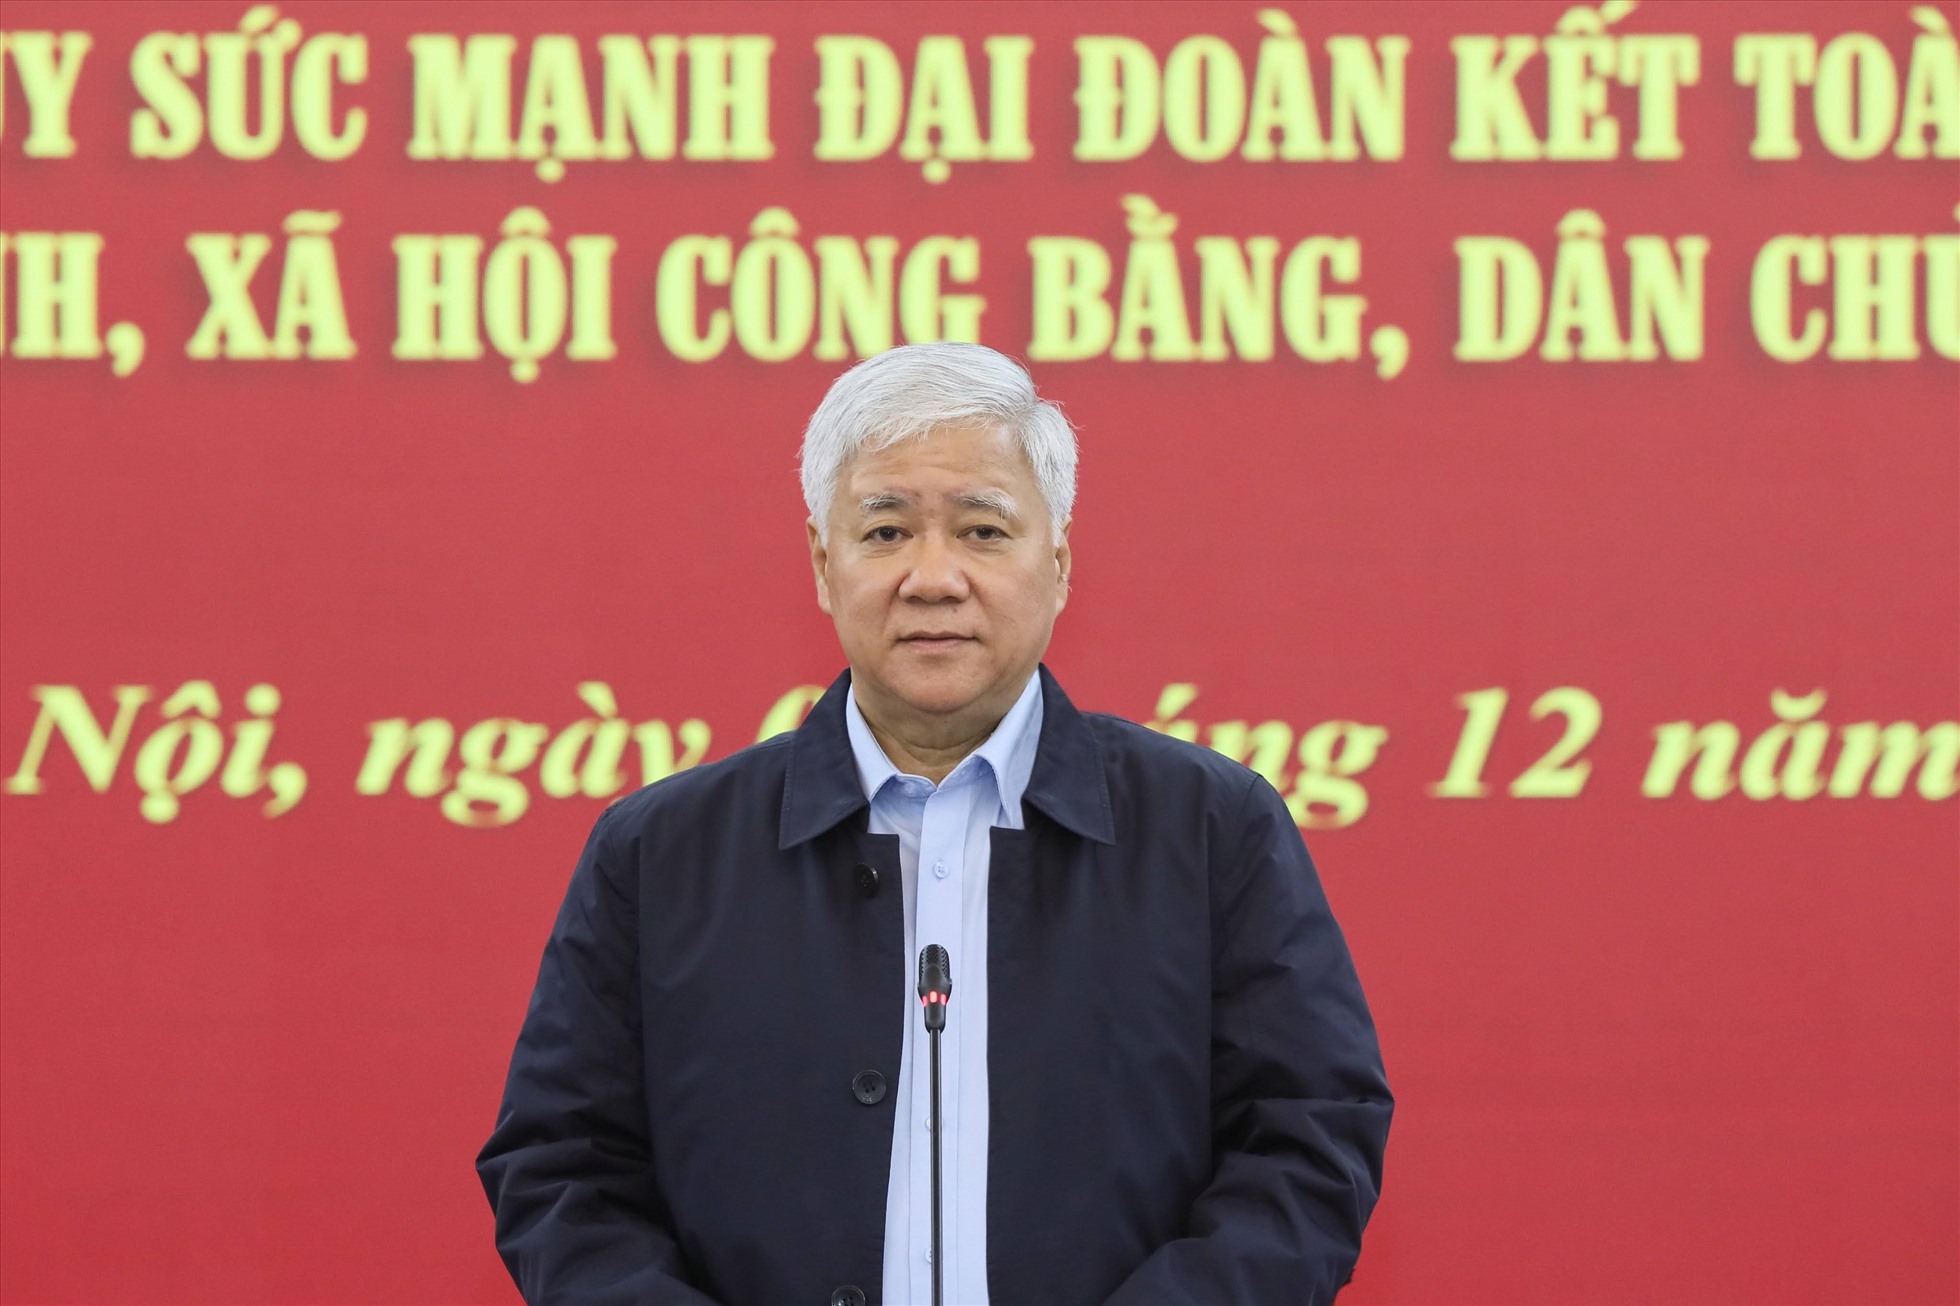 Ông Đỗ Văn Chiến, Chủ tịch Ủy ban Trung ương MTTQ Việt Nam phát biểu tại cuộc làm việc. Ảnh: Quang Vinh